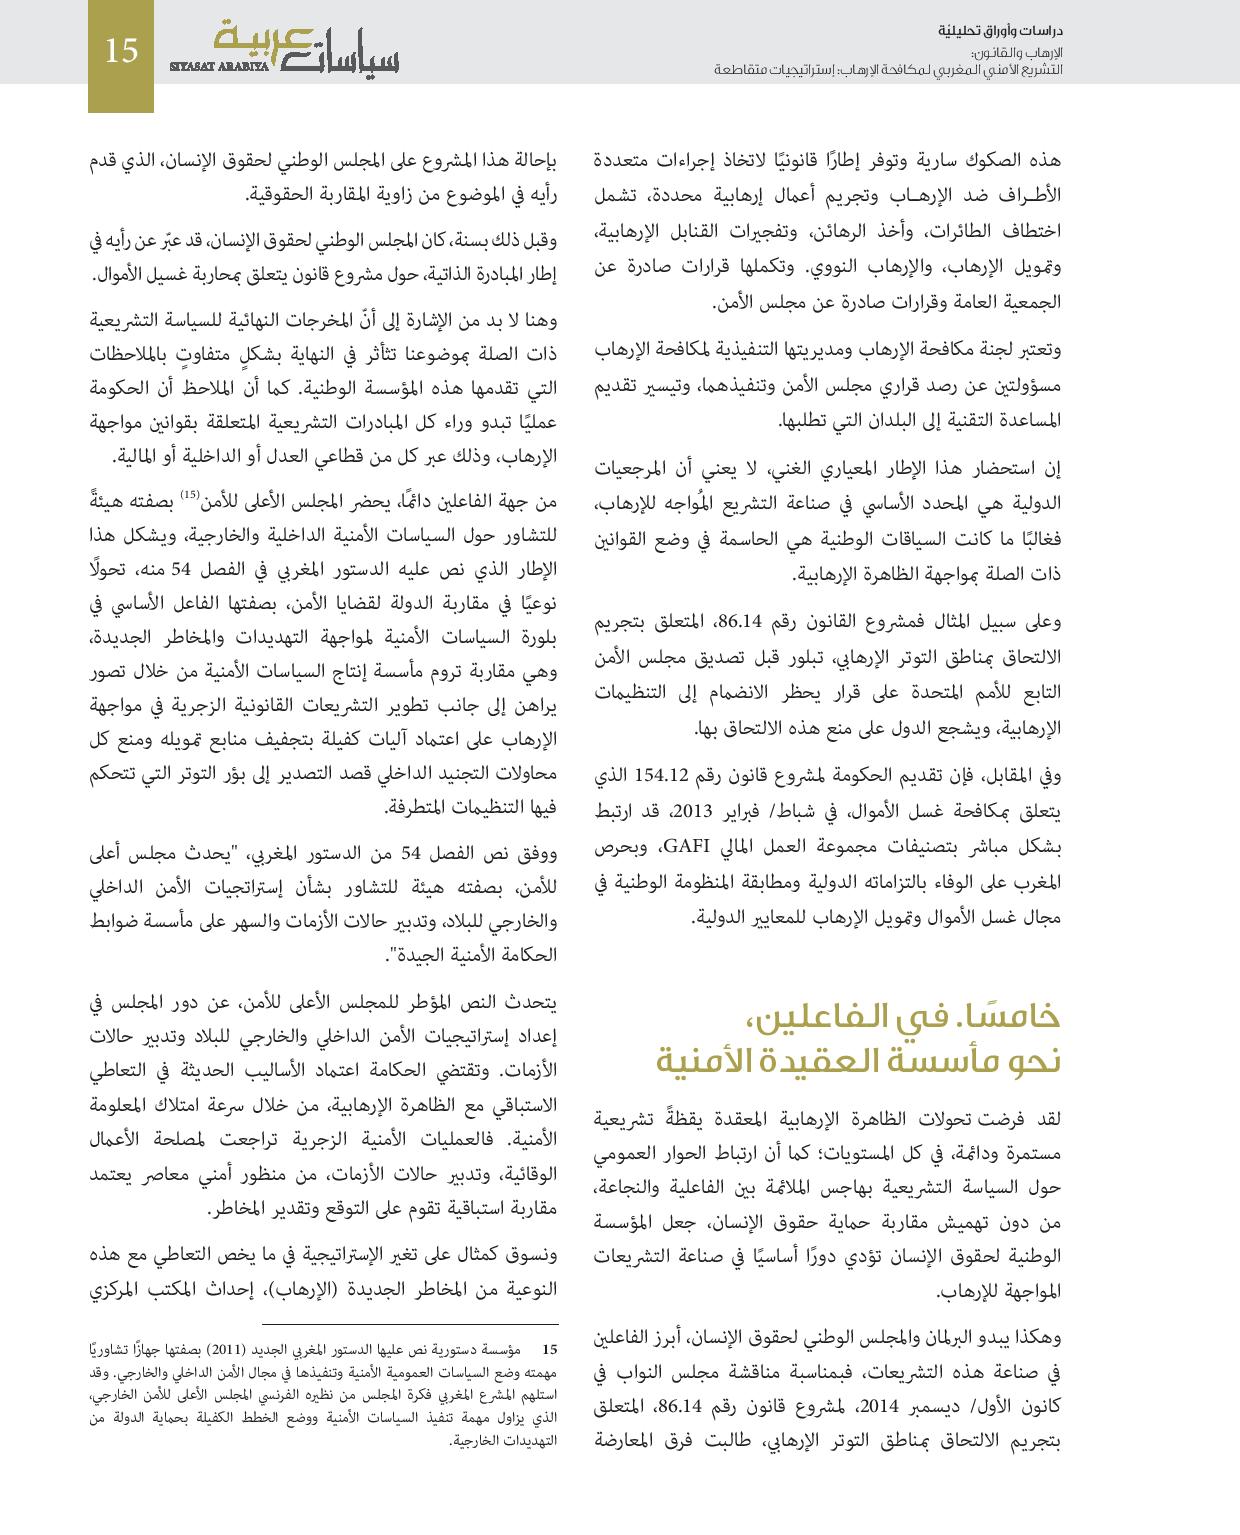 الإرهاب والقانون: التشريع الأمني المغربي لمكافحة الإرهاب.